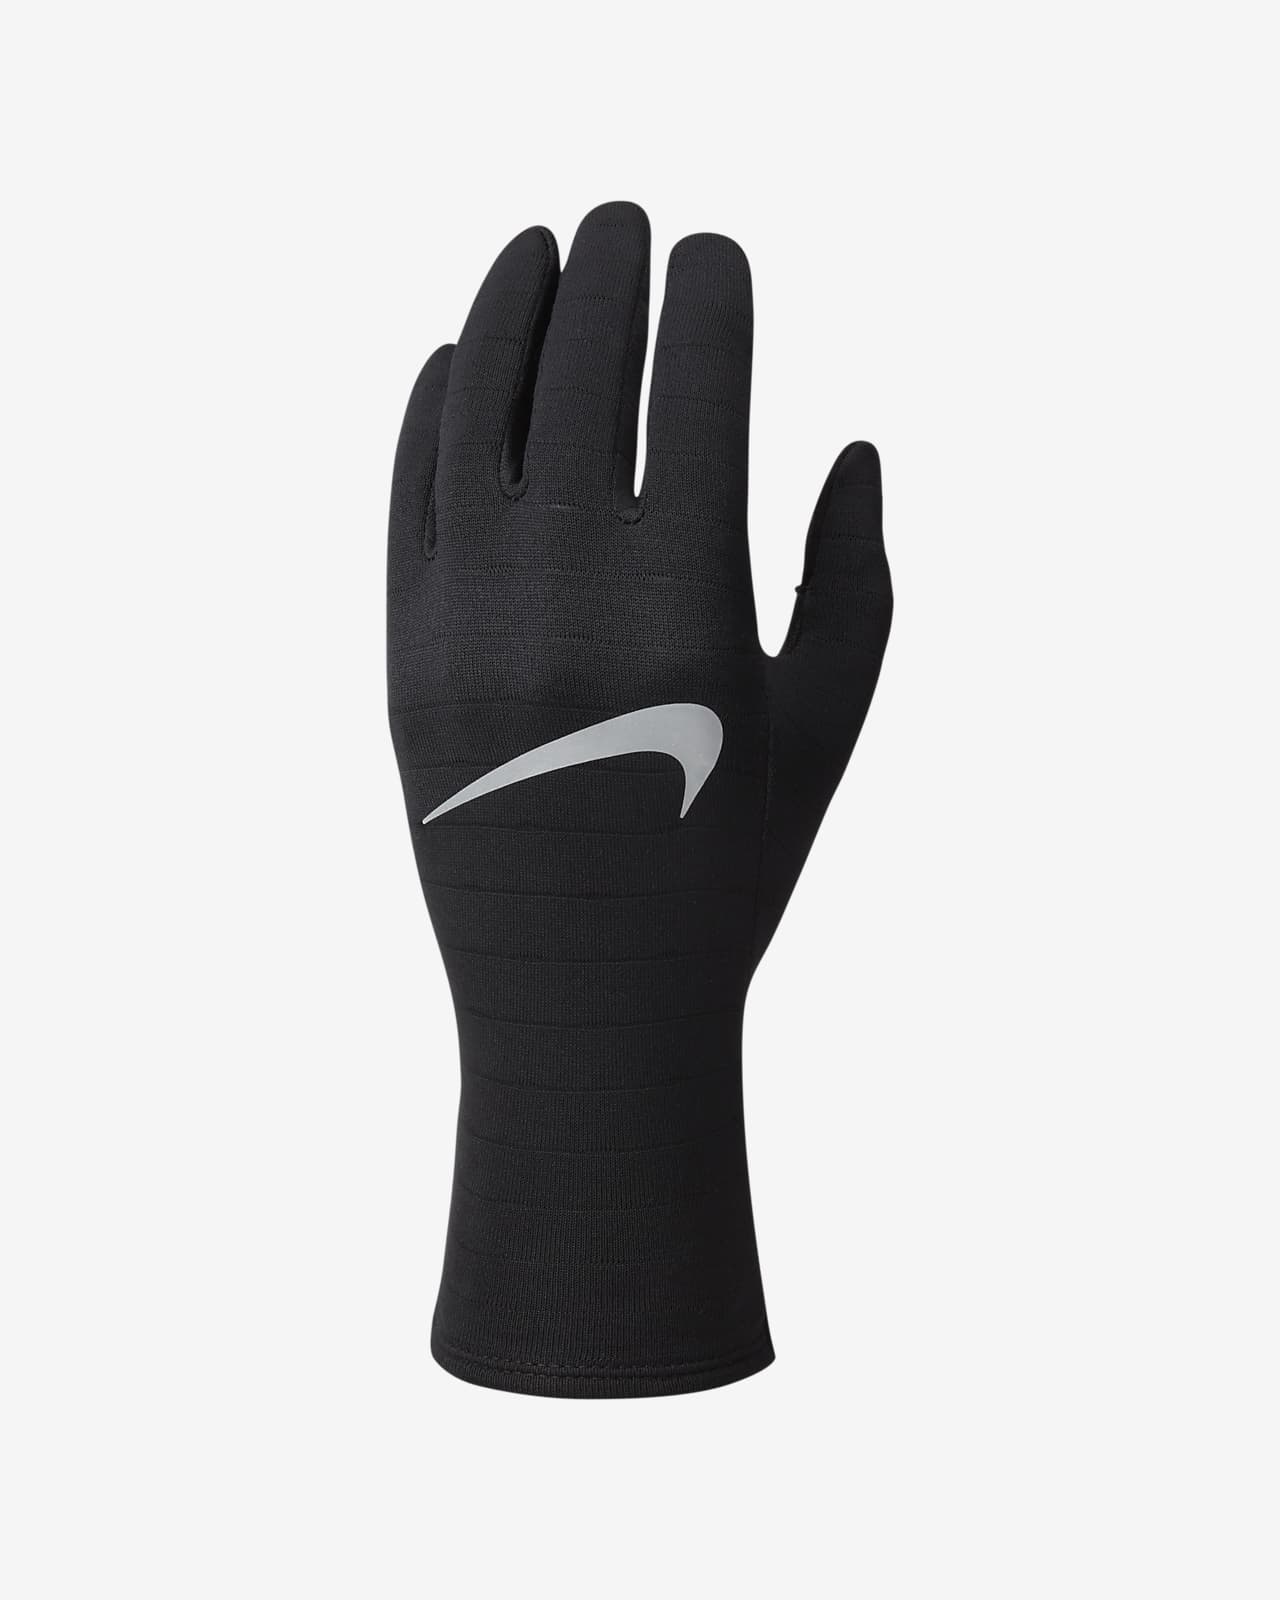 Nike Sphere Women's Running Gloves